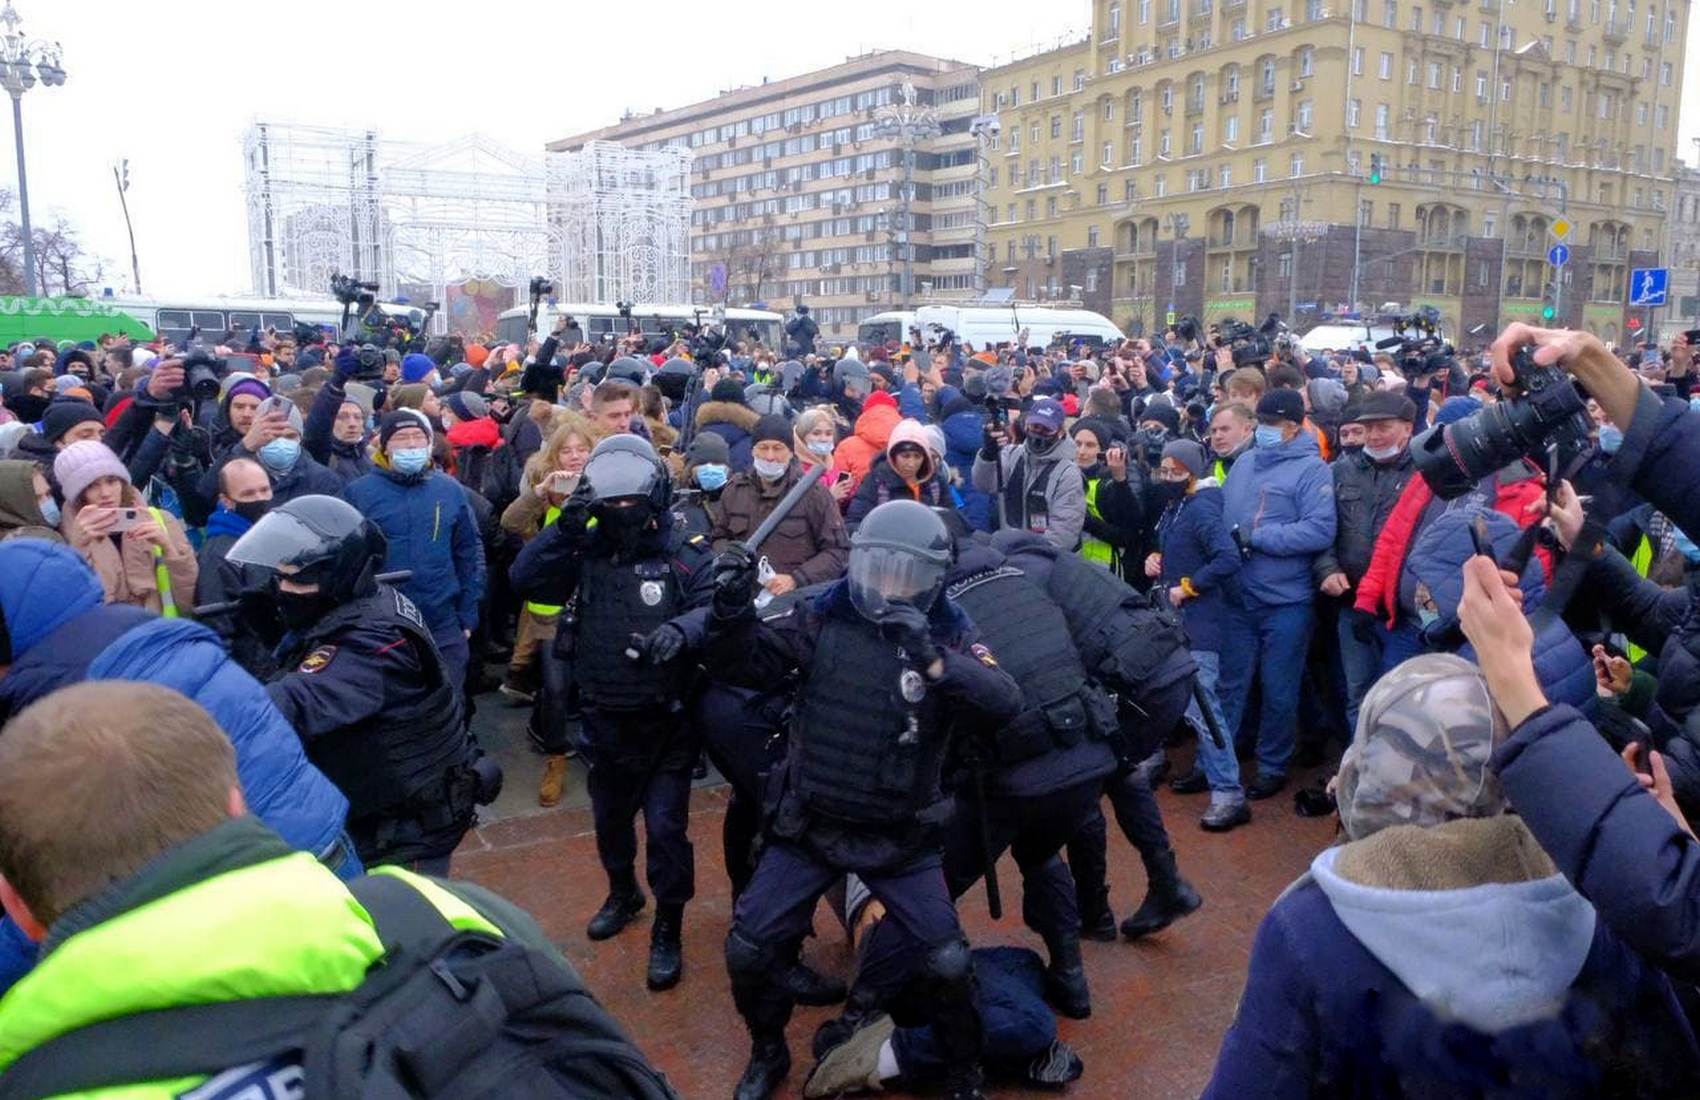 Ютуб новости сегодня прямой эфир. Митинг Навального 23 января 2021 Москва. Митинг Навального в Москве. Митинг 23 января Пушкинская площадь.